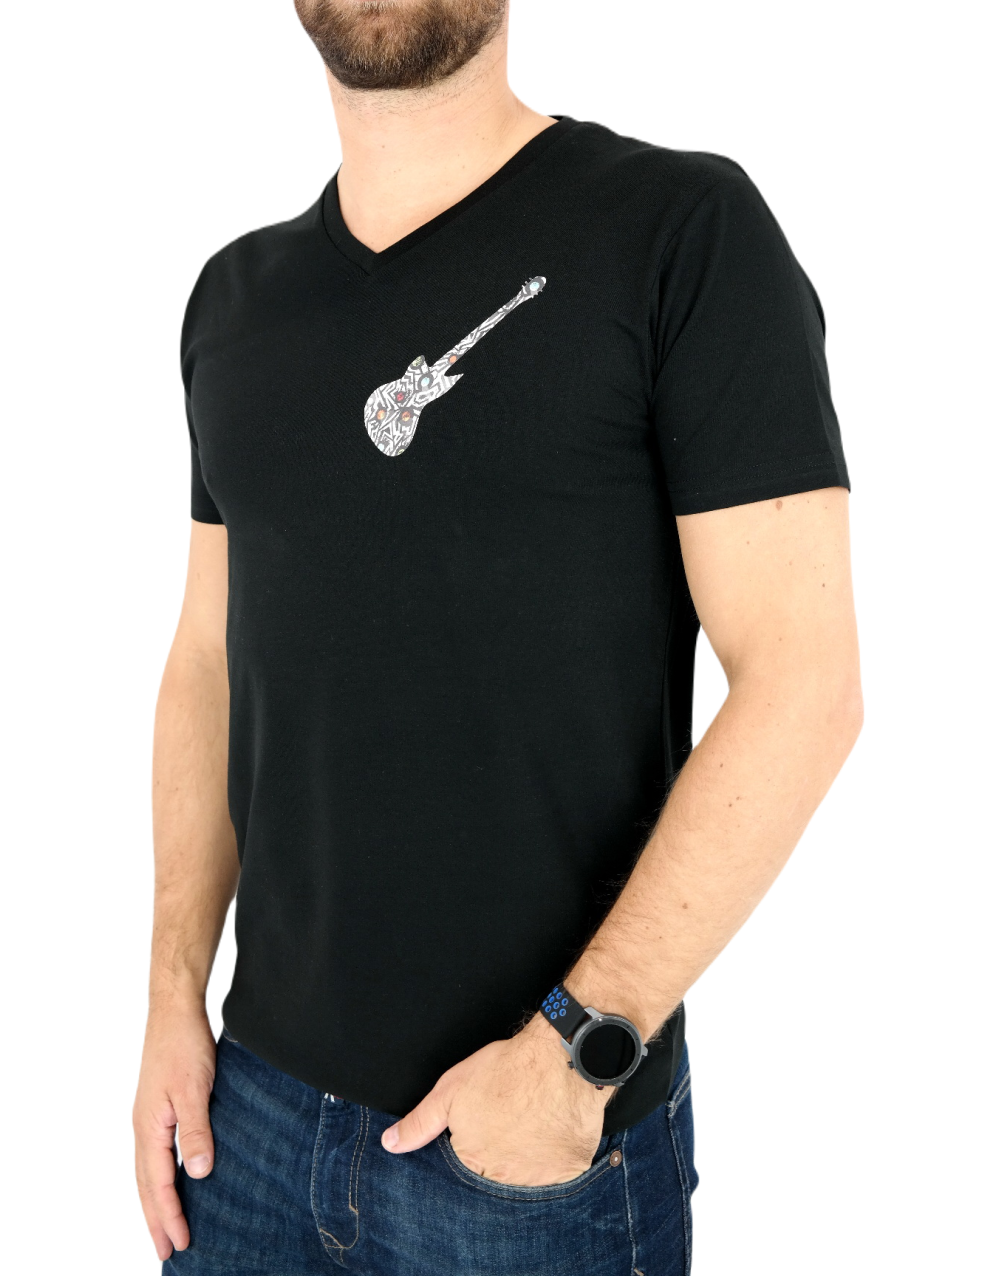 GIOVANNI PERA T-shirt męski czarny TGP73 w szpic, serek , gitara, elastan